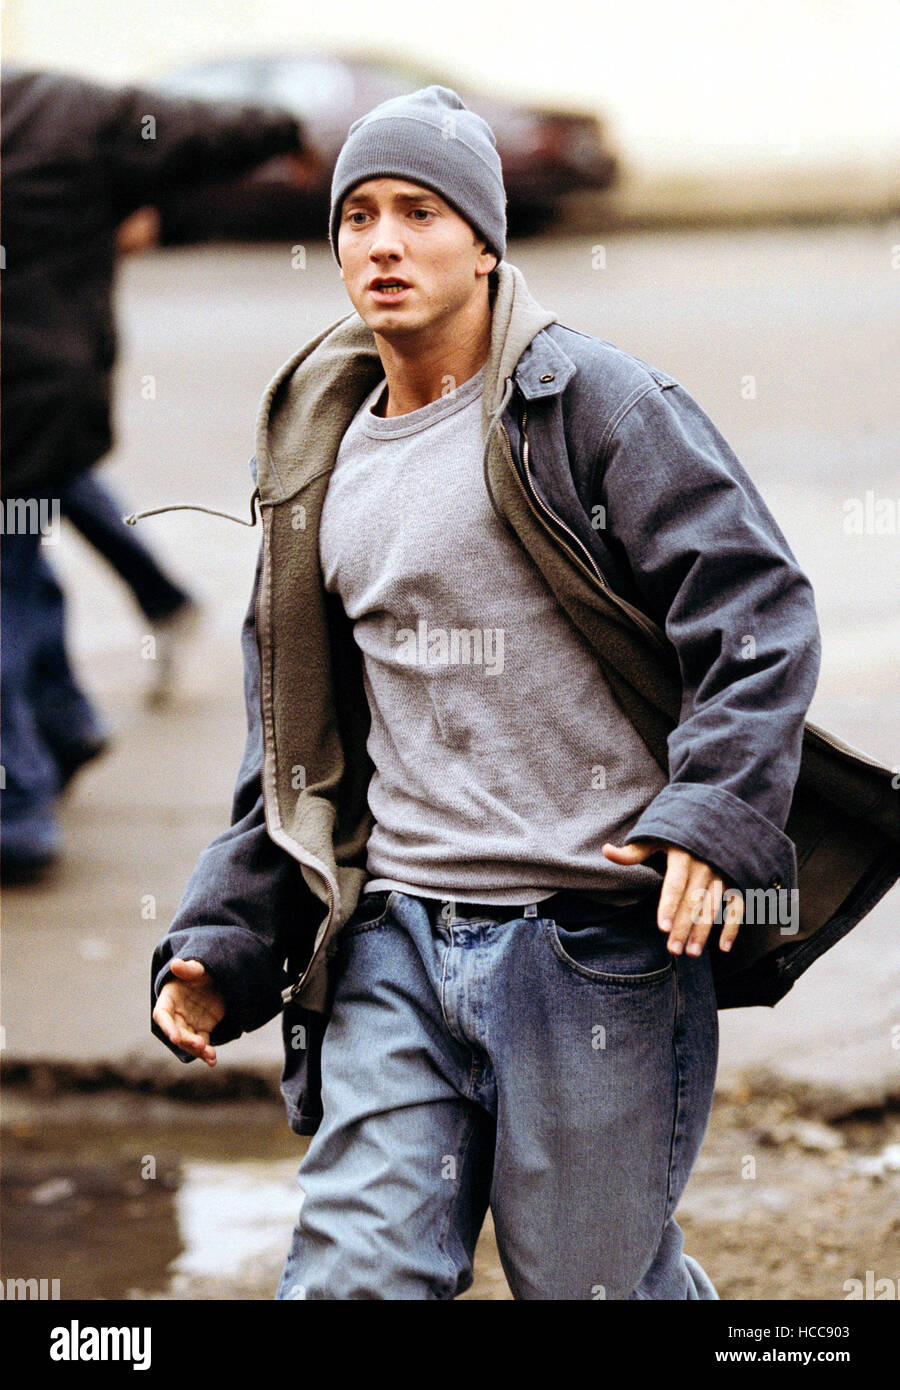 8 MILE, Eminem, 2002, (c) Universal/avec la permission d'Everett Collection  Photo Stock - Alamy